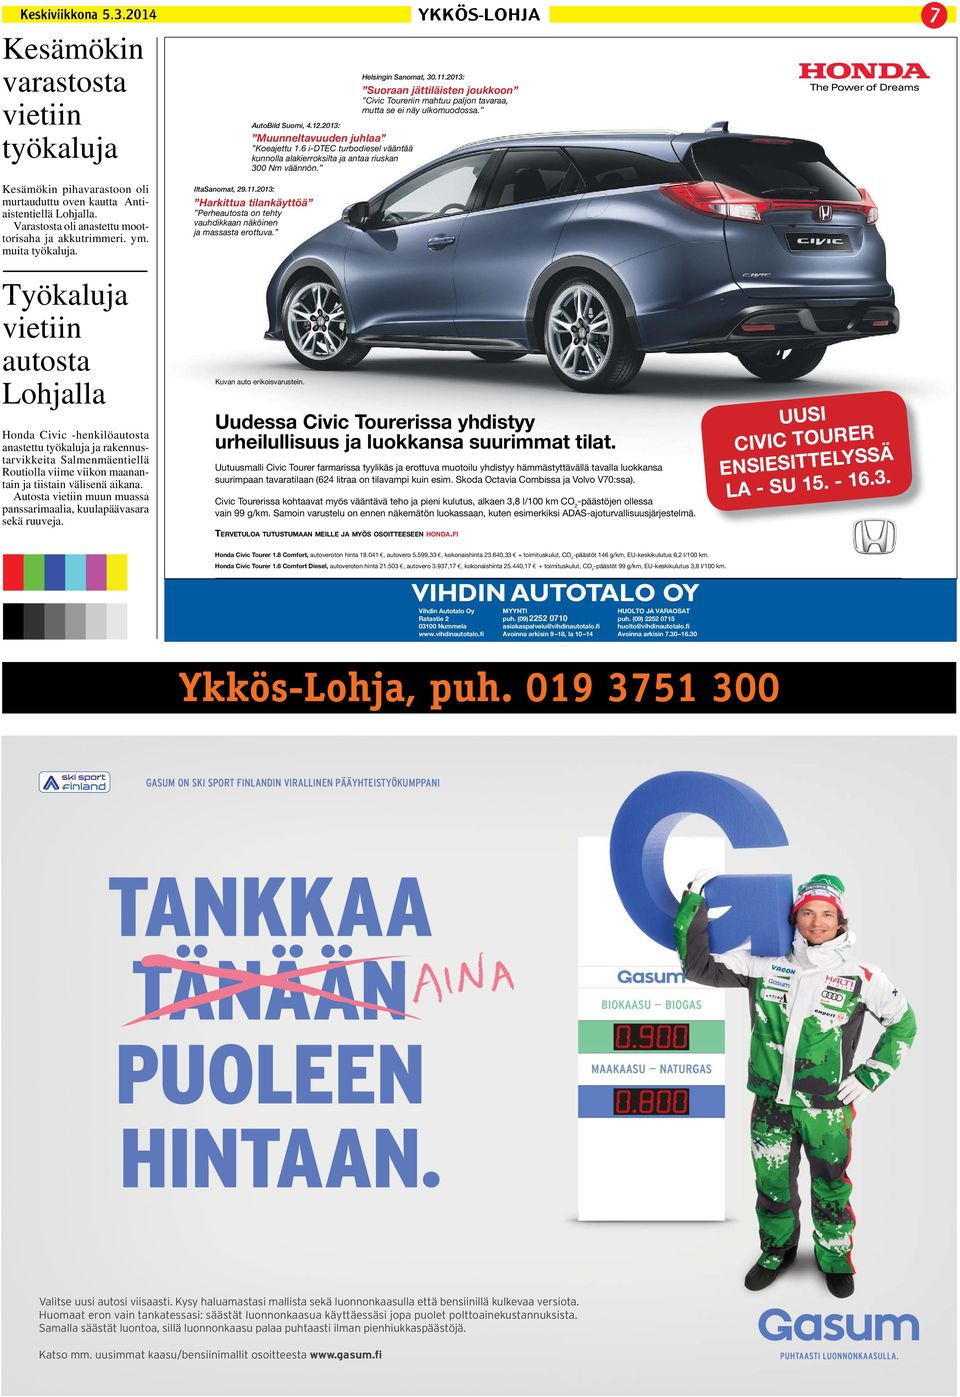 2013: Harkittua tilankäyttöä Perheautosta on tehty vauhdikkaan näköinen ja massasta erottuva. Helsingin Sanomat, 30.11.